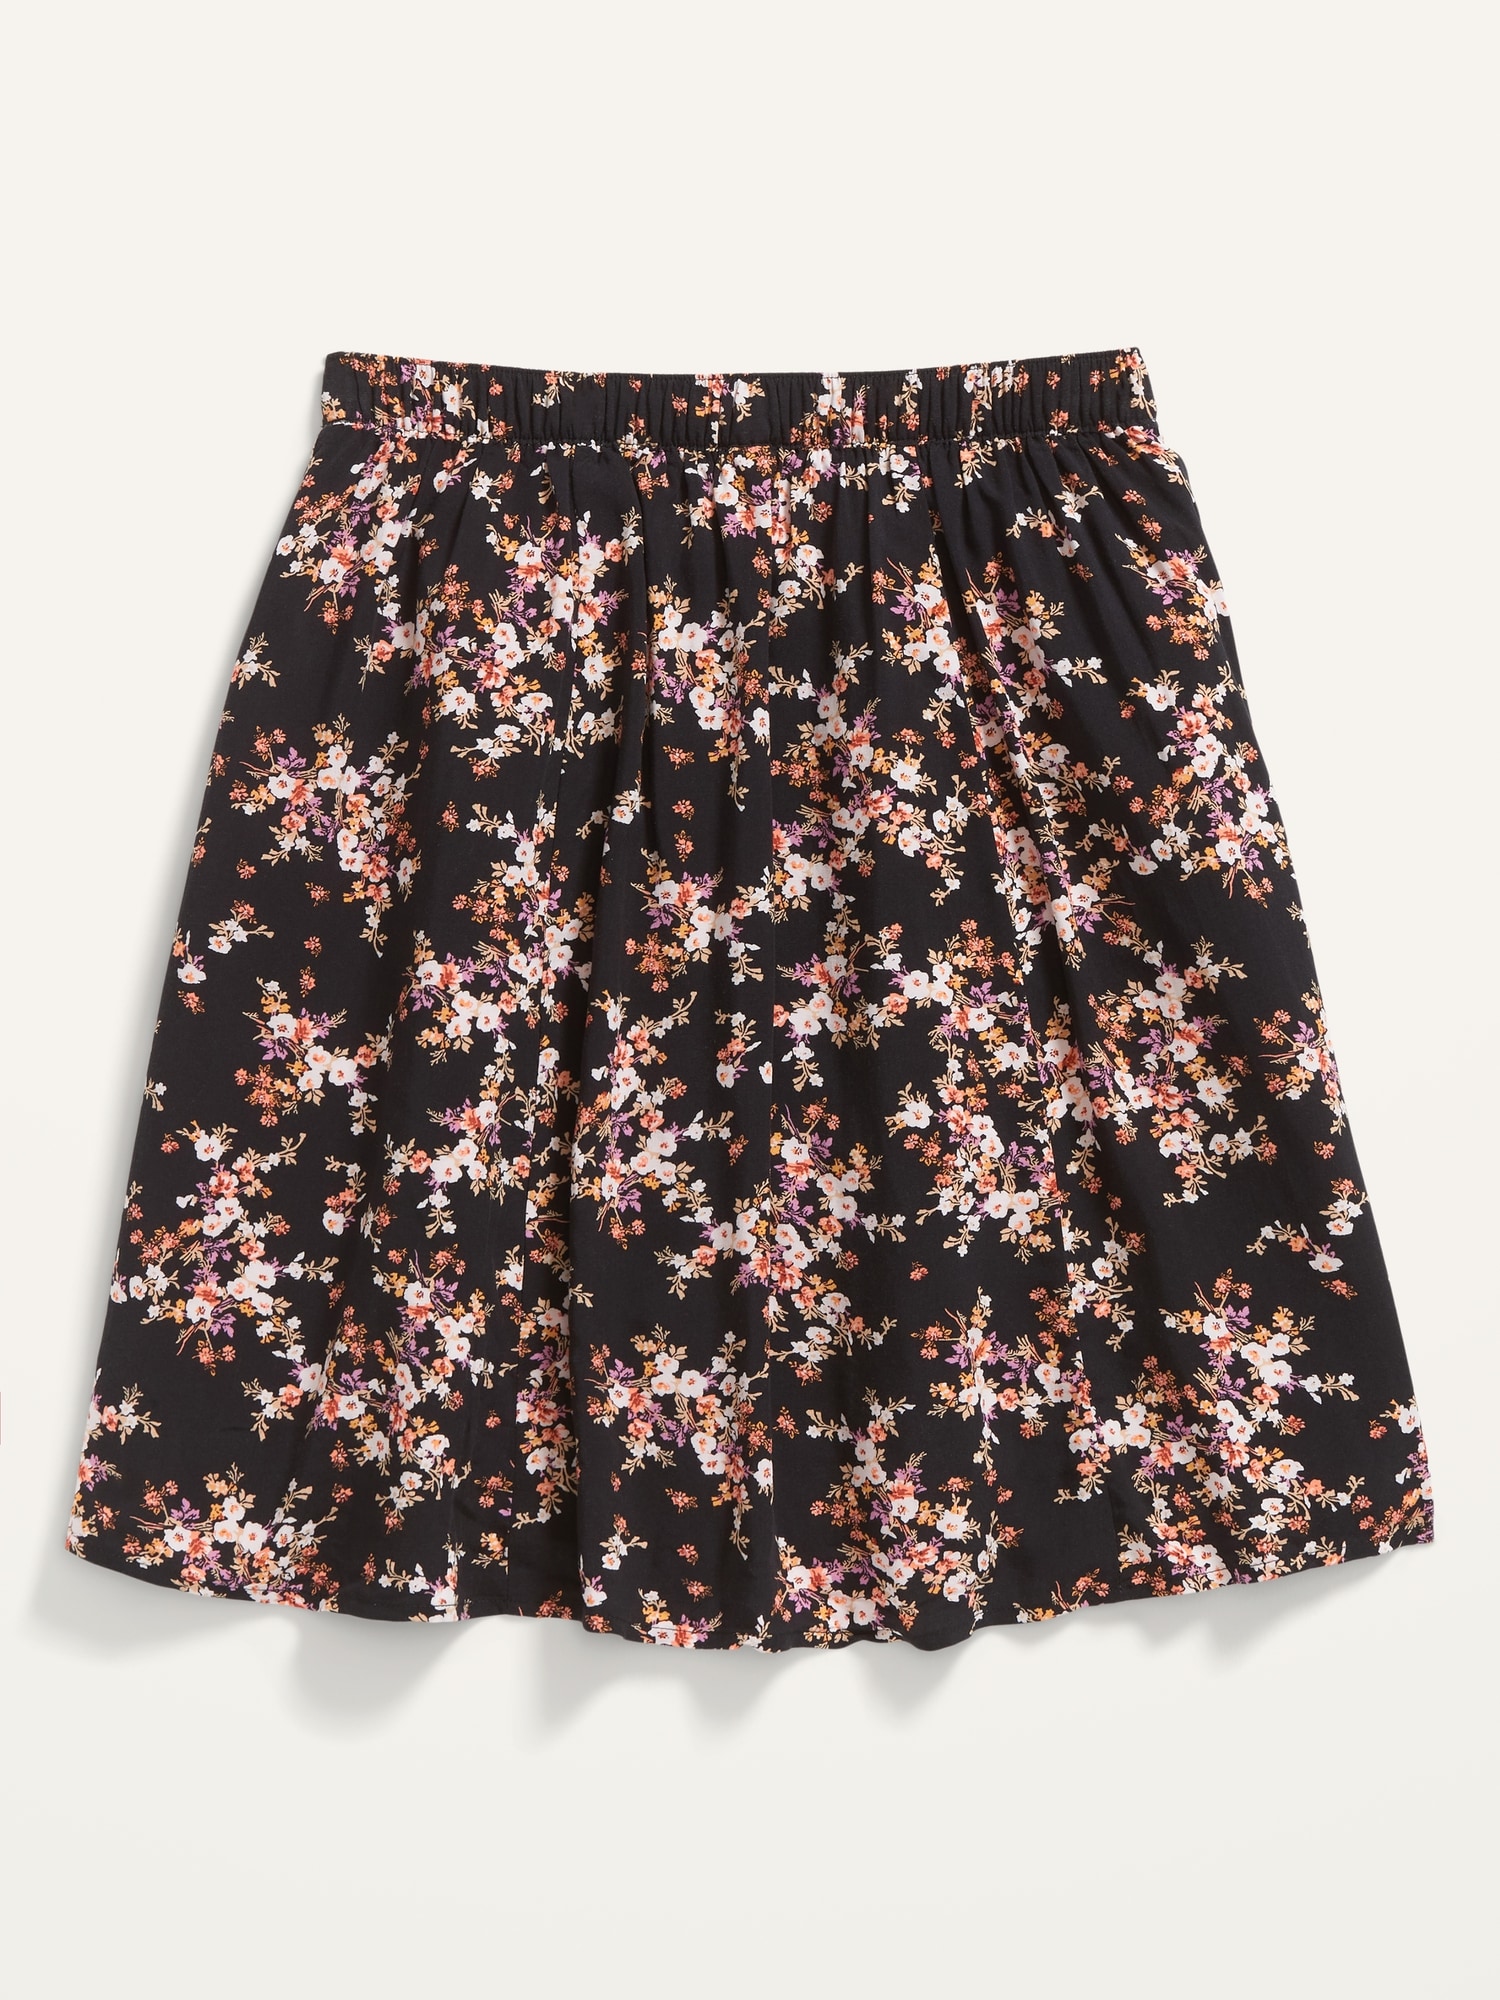 flowers skirt